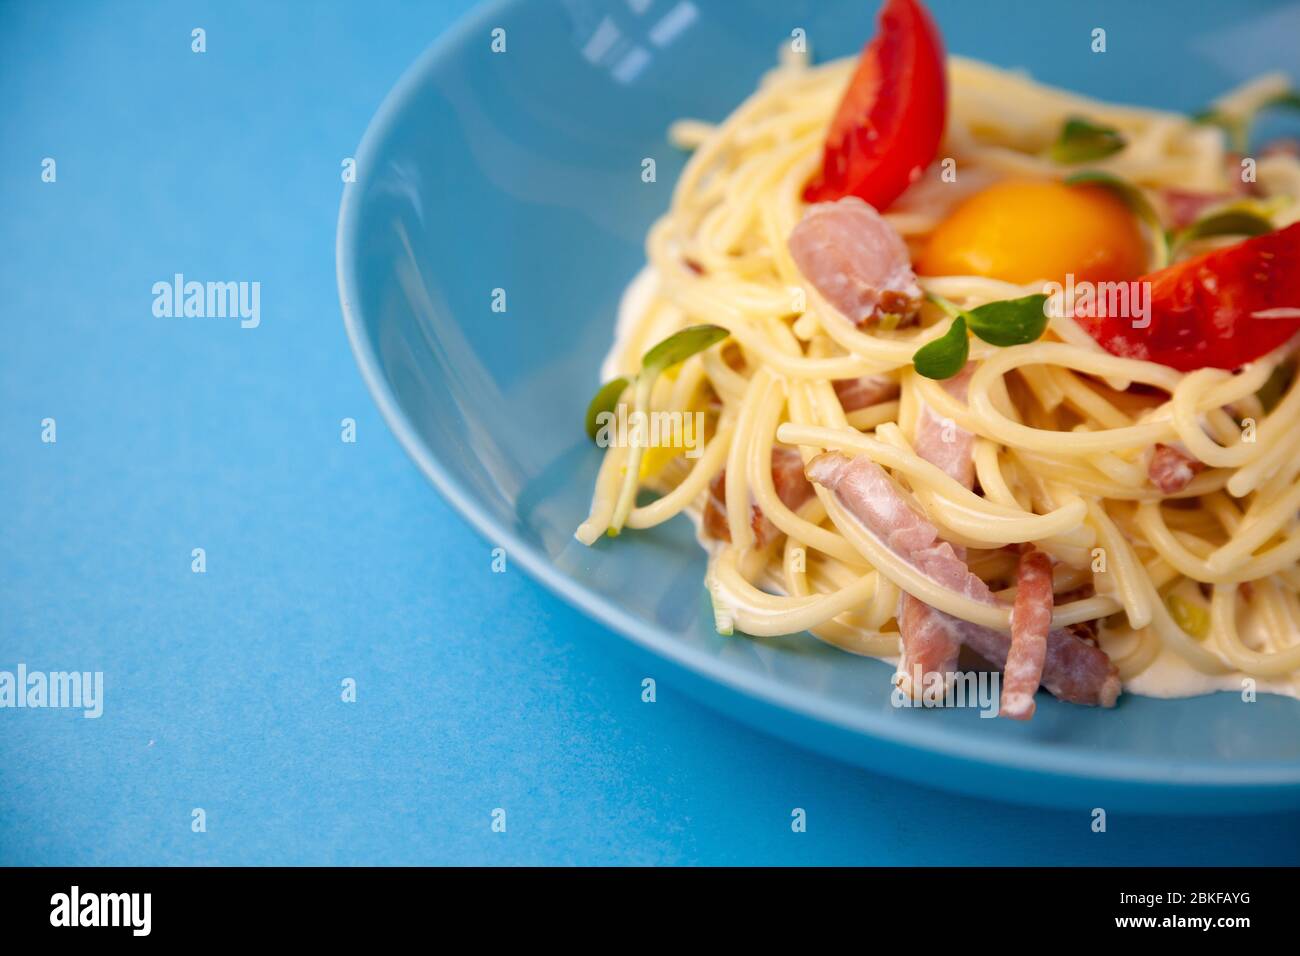 Pasta Carbonara - spaghetti con piccoli pezzi di pancetta, mescolati con salsa di uova, parmigiano. Piastra blu su sfondo blu. Macanons con uovo Foto Stock